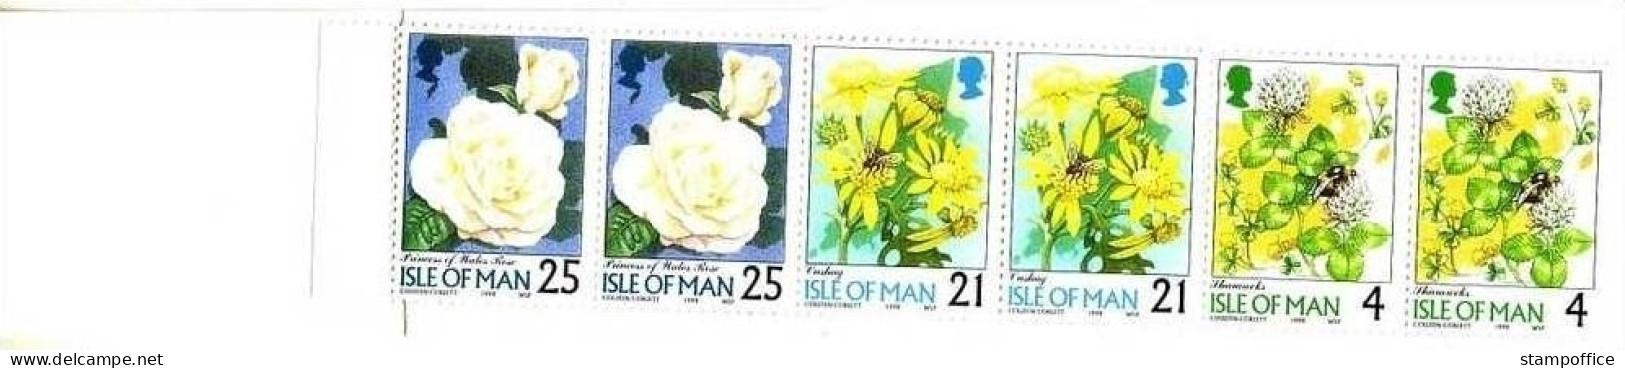 ISLE OF MAN MH 41 POSTFRISCH(MINT) BLUMEN - WEISSKLEE ROSE 1998 - Isle Of Man